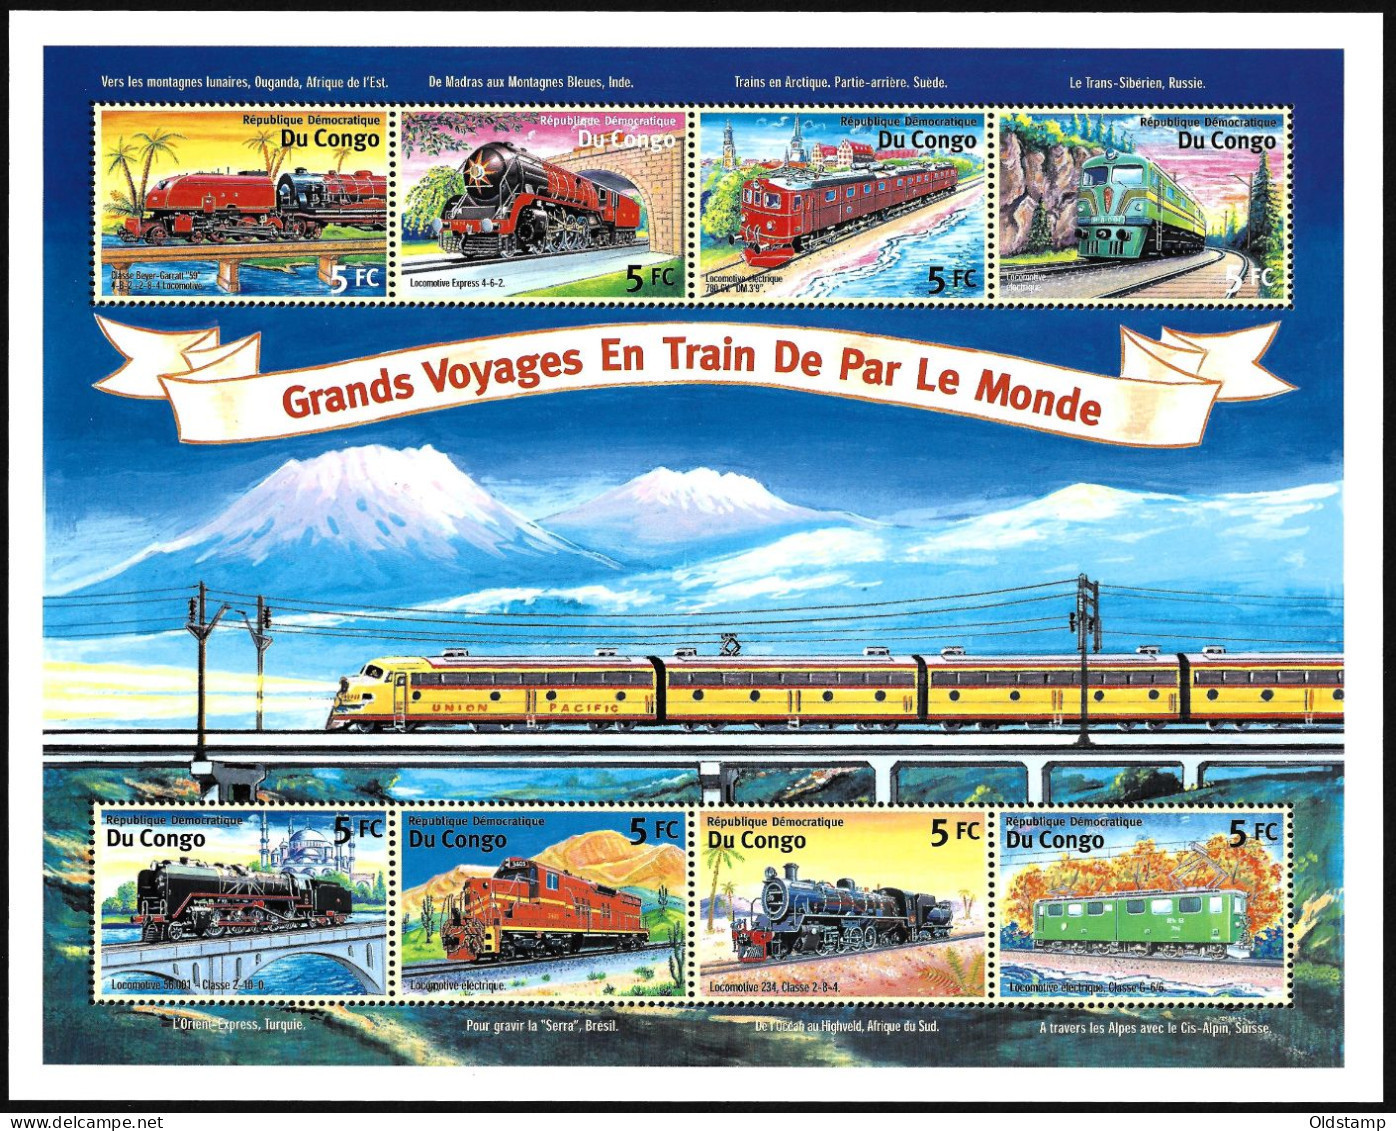 TRAINS Congo 2001 Railroad Steam Locomotive Railways Grand Voyages En Train De Par Le Monde Stamps Block - Treinen